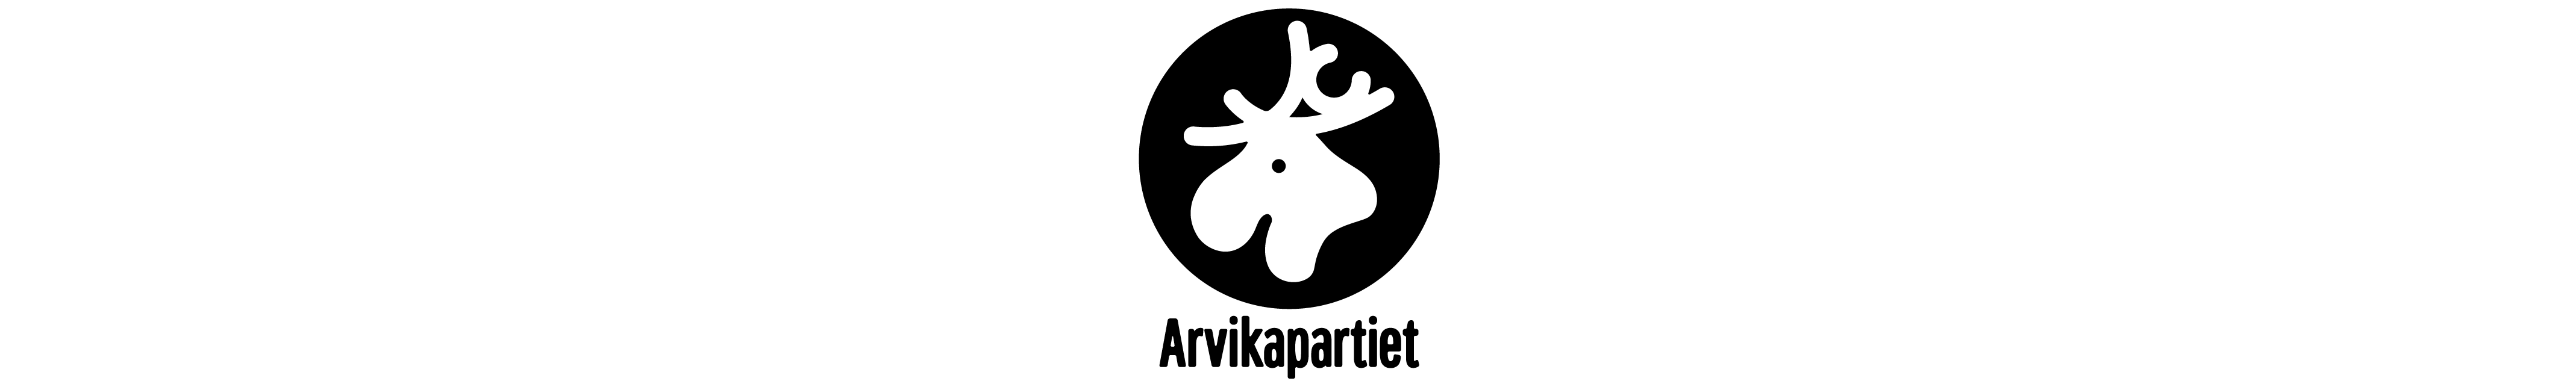 Stiliserat älghuvud i svart och vitt, symbol för Arvikapartiet